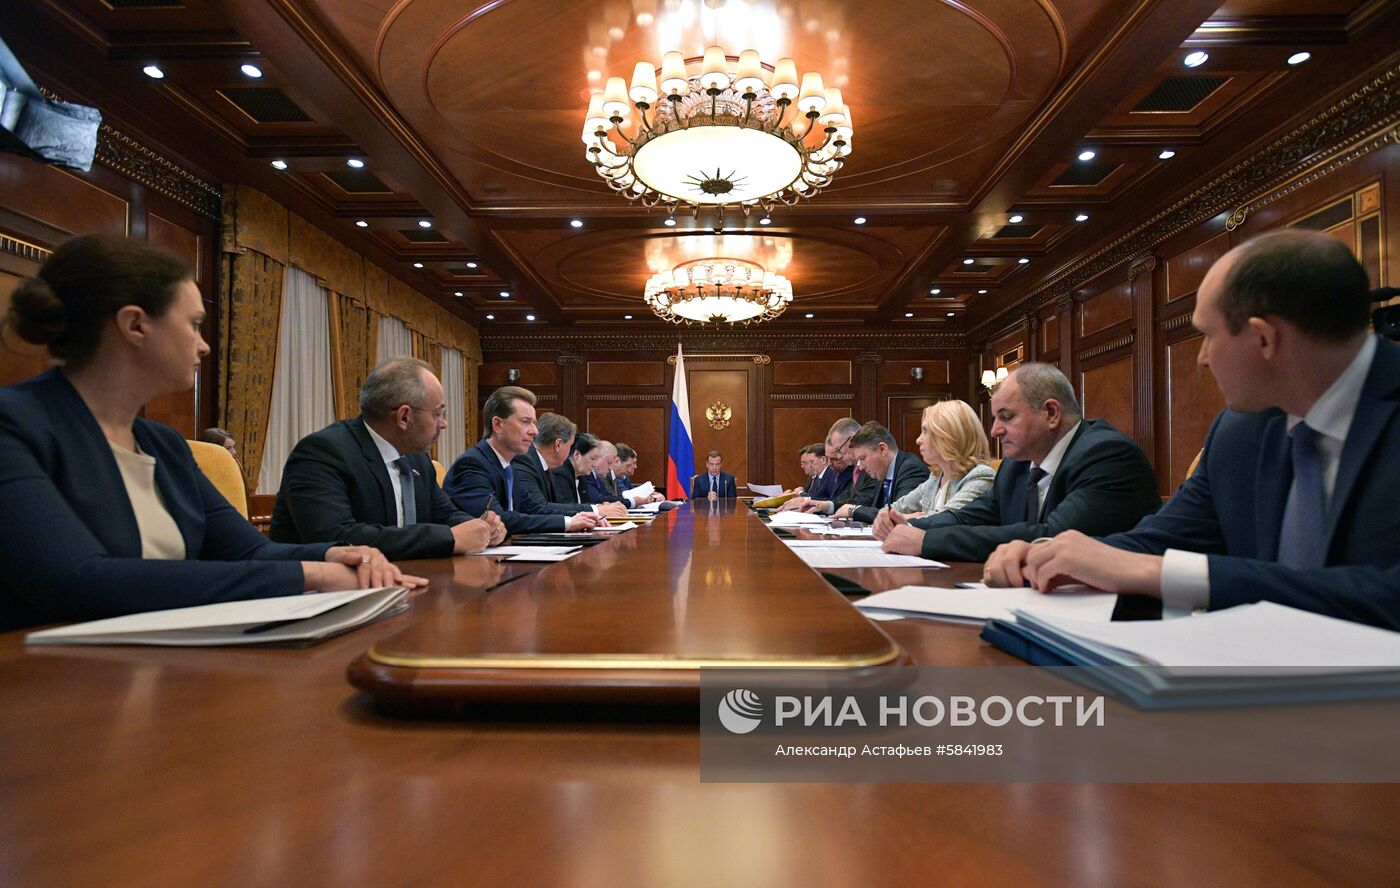 Премьер-министр РФ Д. Медведев провел встречу с руководством фракции партии "Справедливая Россия" в Госдуме РФ